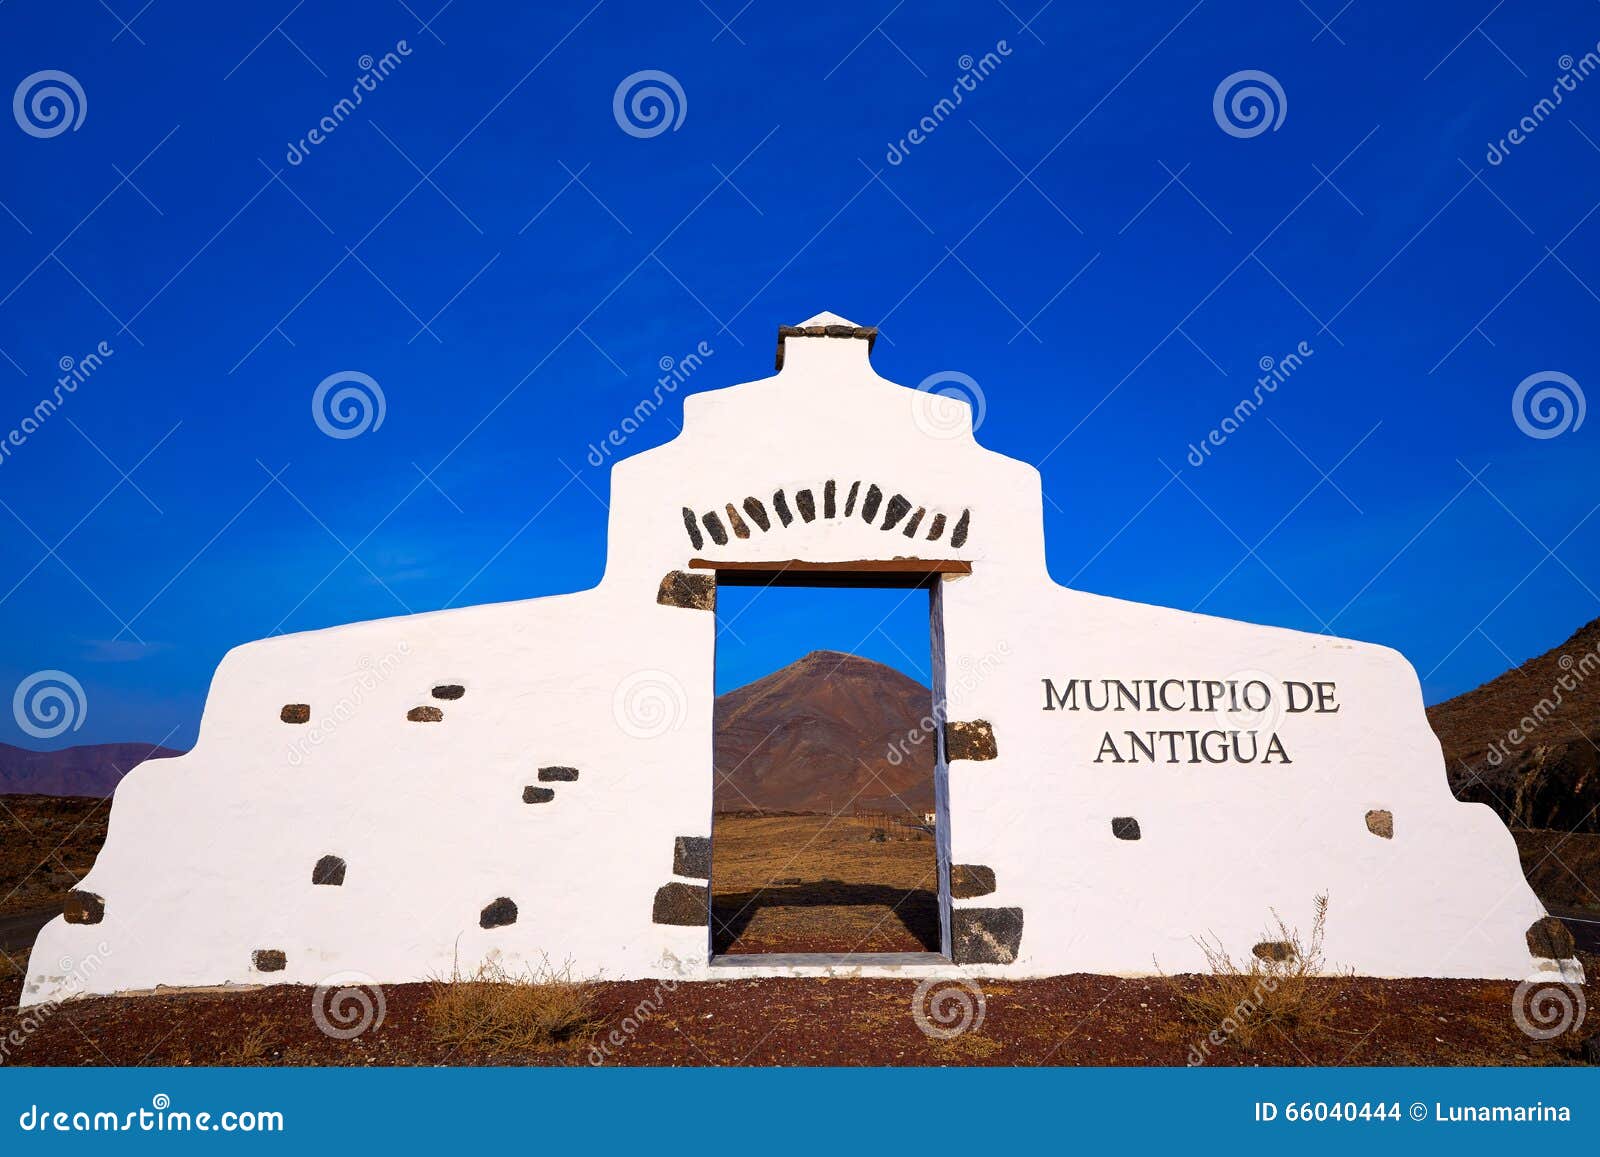 antigua welcome monument sign fuerteventura